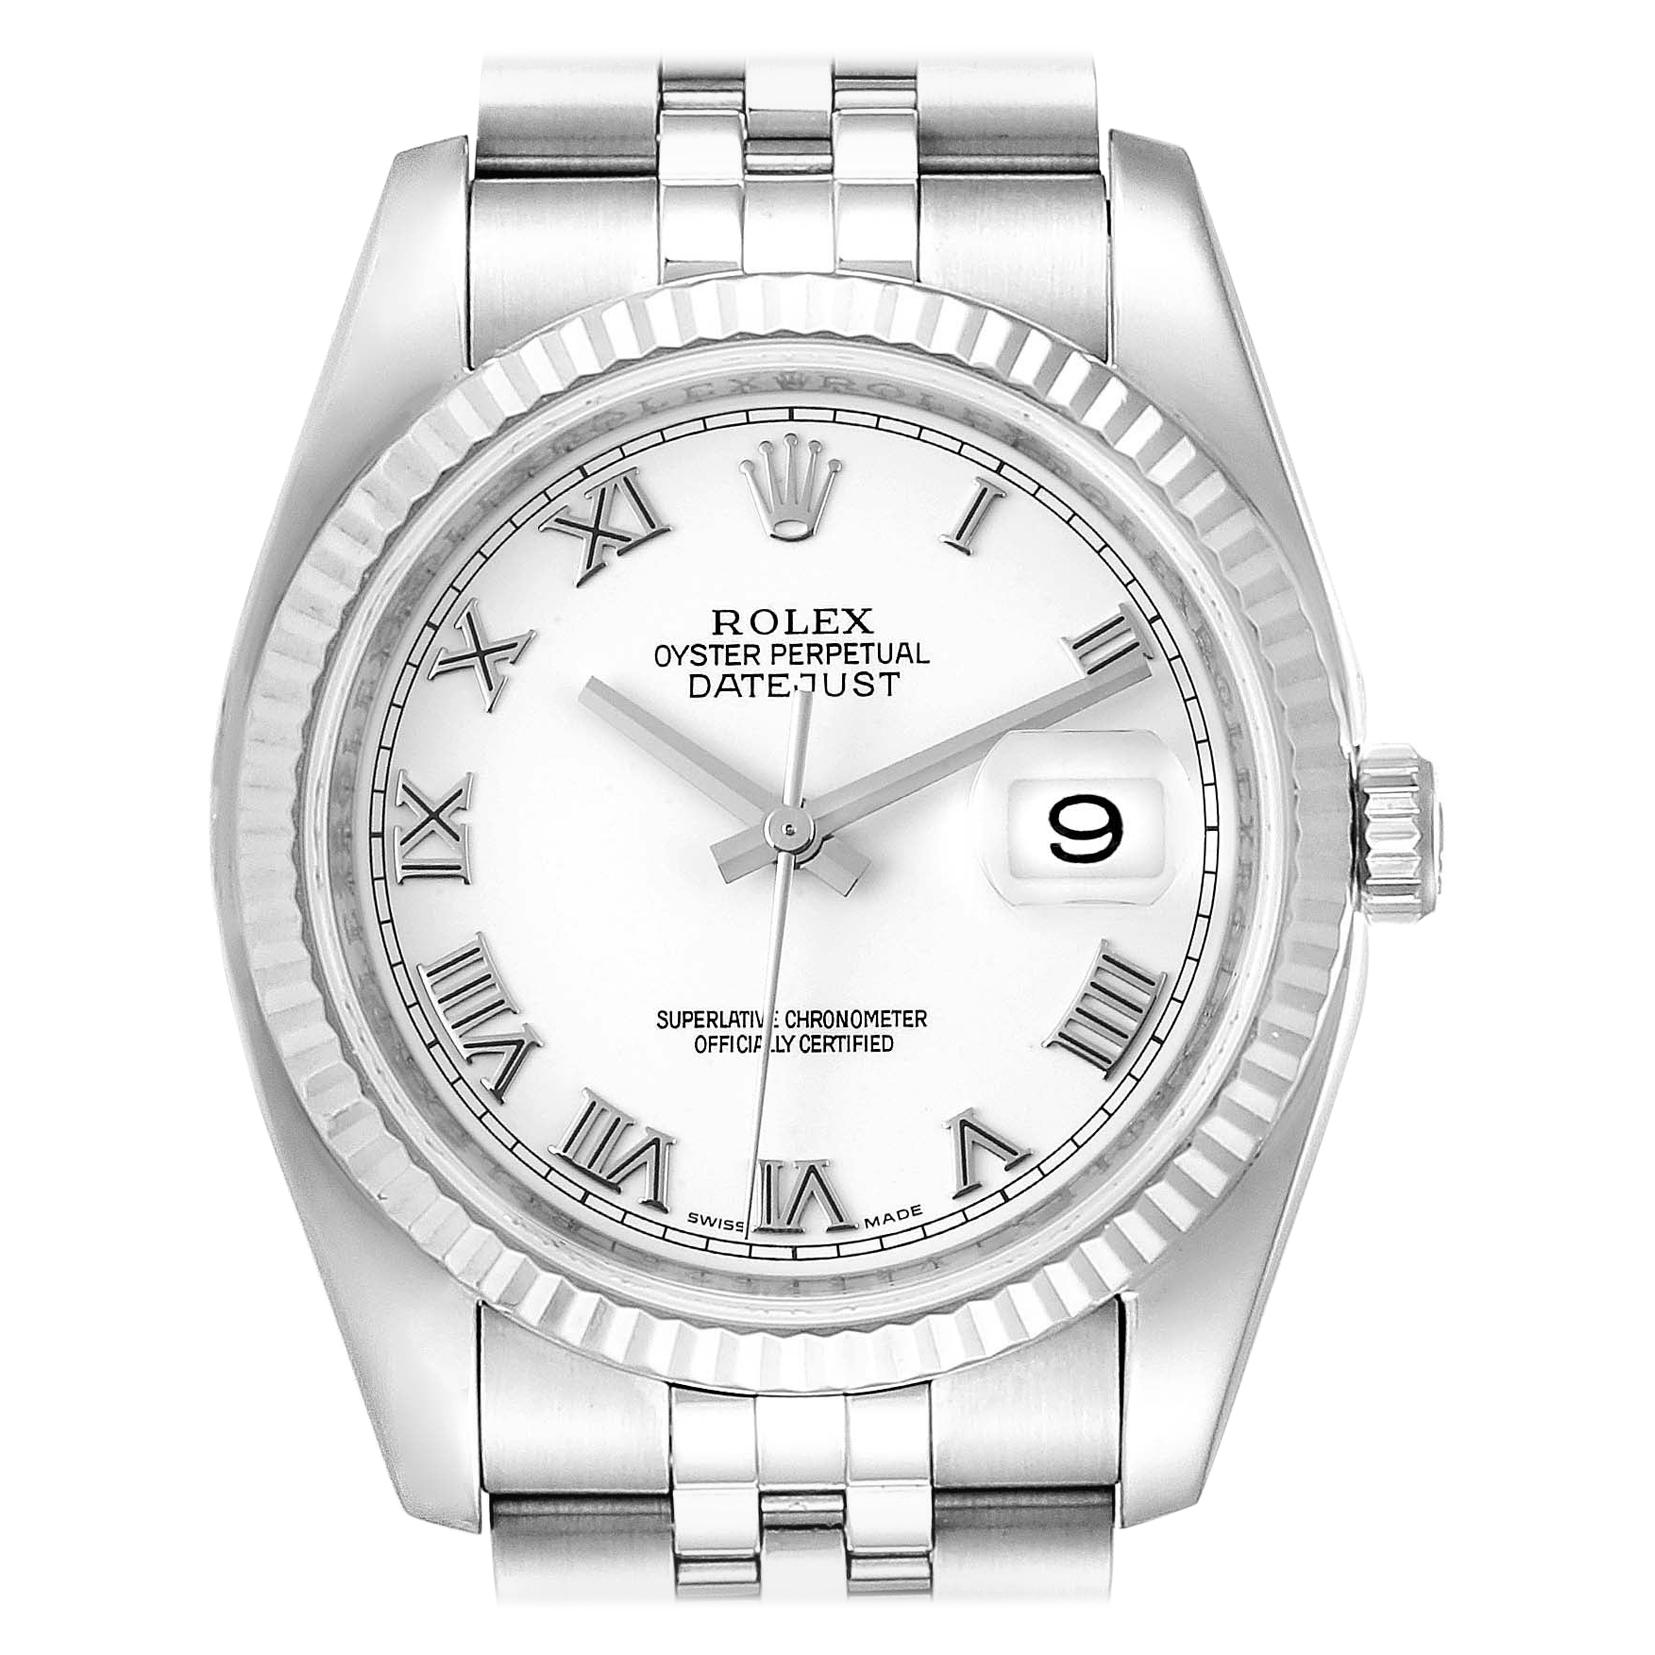 Rolex Datejust Steel White Gold Jubilee Bracelet Watch 116234 For Sale